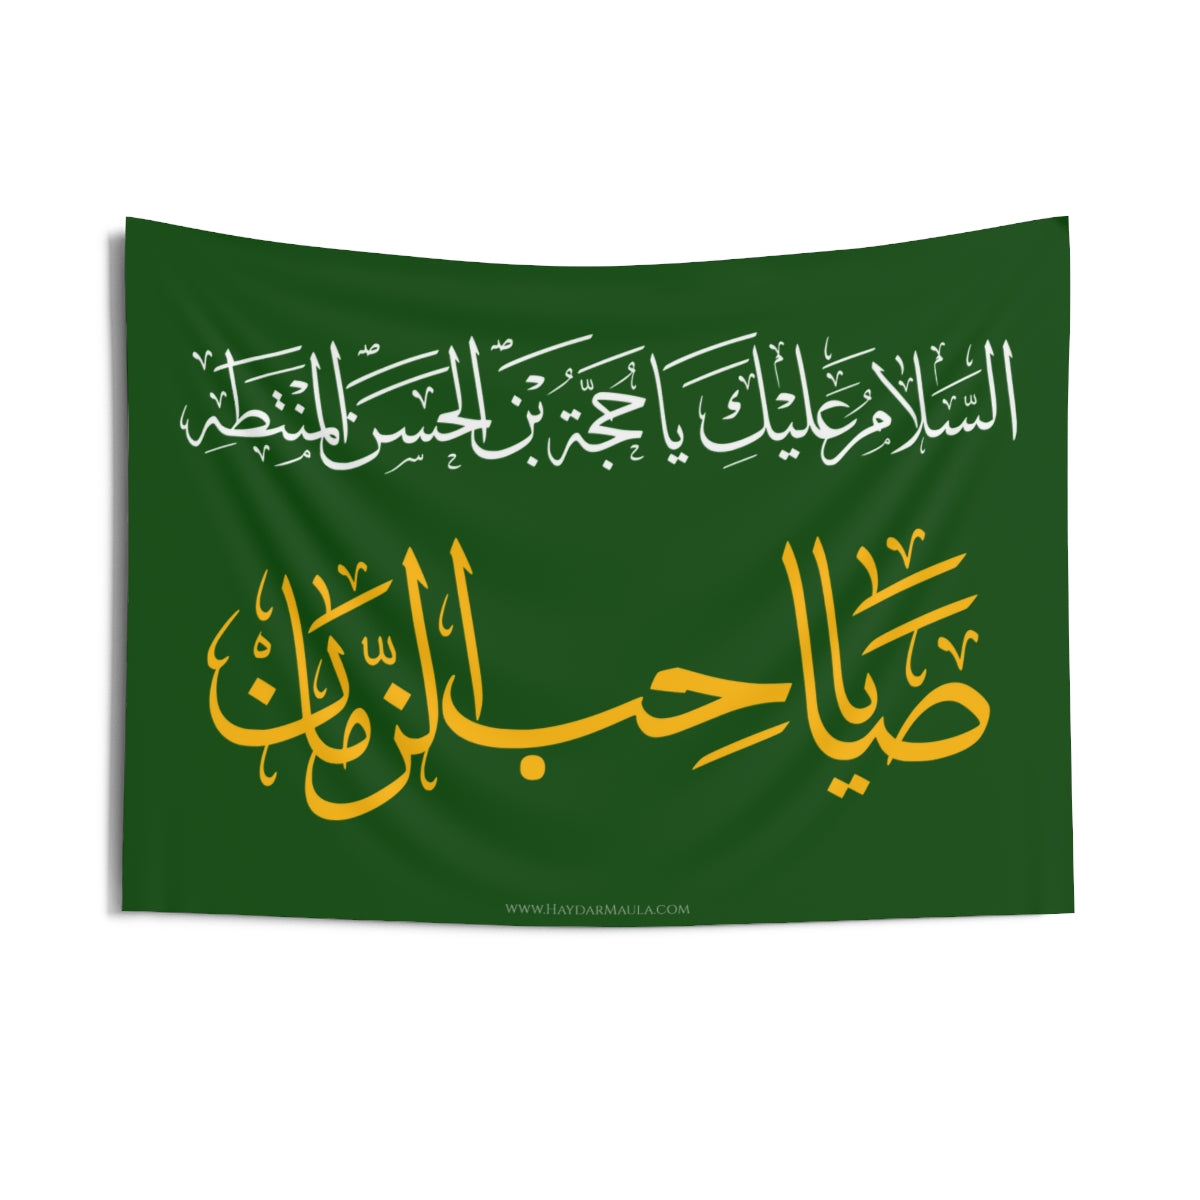 Assalamo 'Alaika Yabnal Hassan (as) Al Muntadhar Ya Sahebuz Zamaan (atfs) - Green Flag Wall Tapestry, Shia Islamic, Ya Mahdi, 313